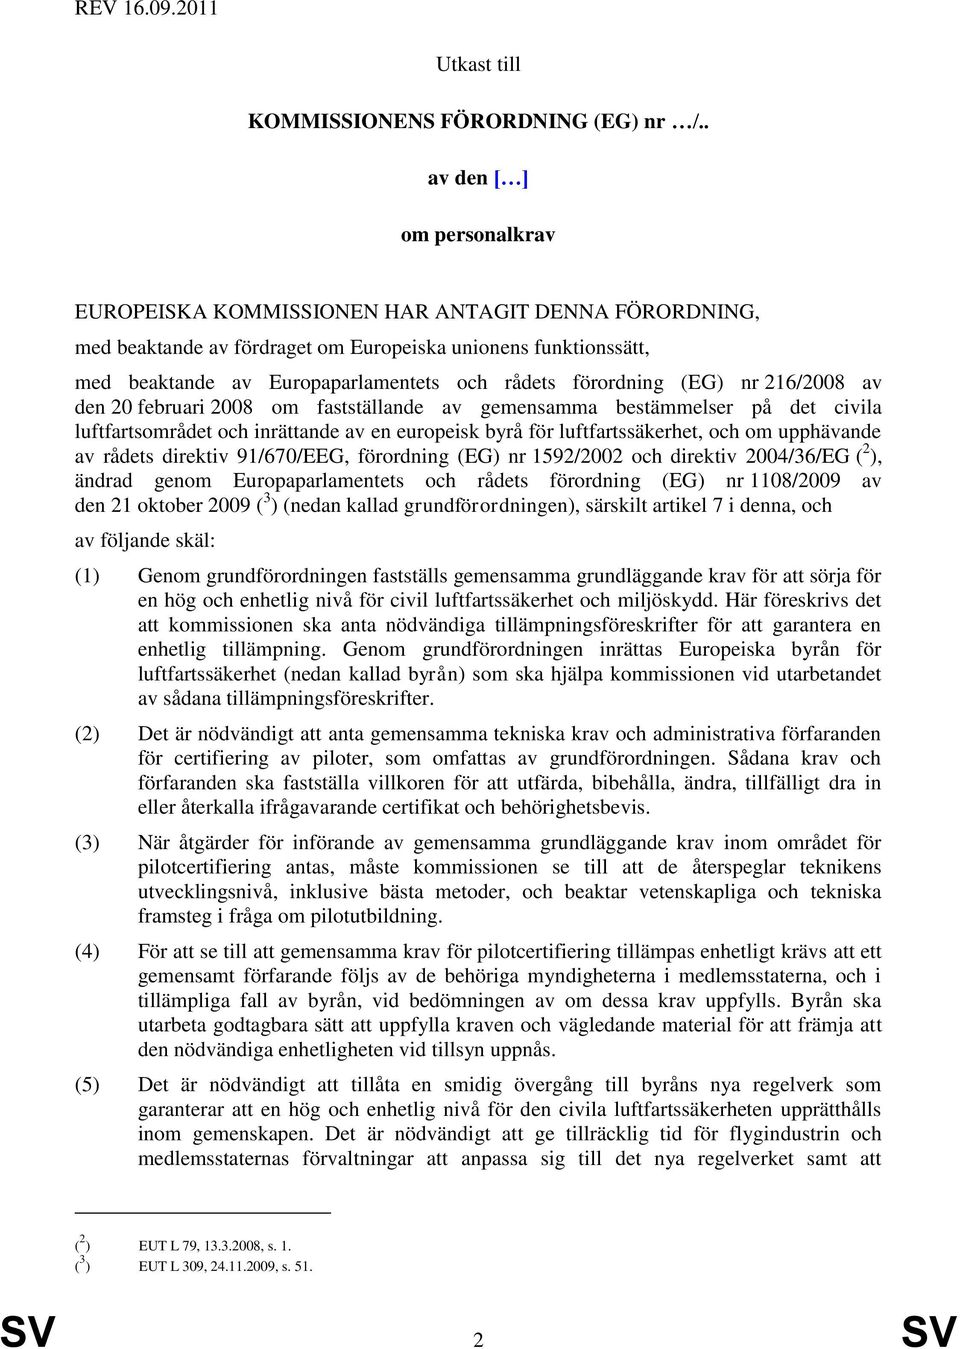 förordning (EG) nr 216/2008 av den 20 februari 2008 om fastställande av gemensamma bestämmelser på det civila luftfartsområdet och inrättande av en europeisk byrå för luftfartssäkerhet, och om